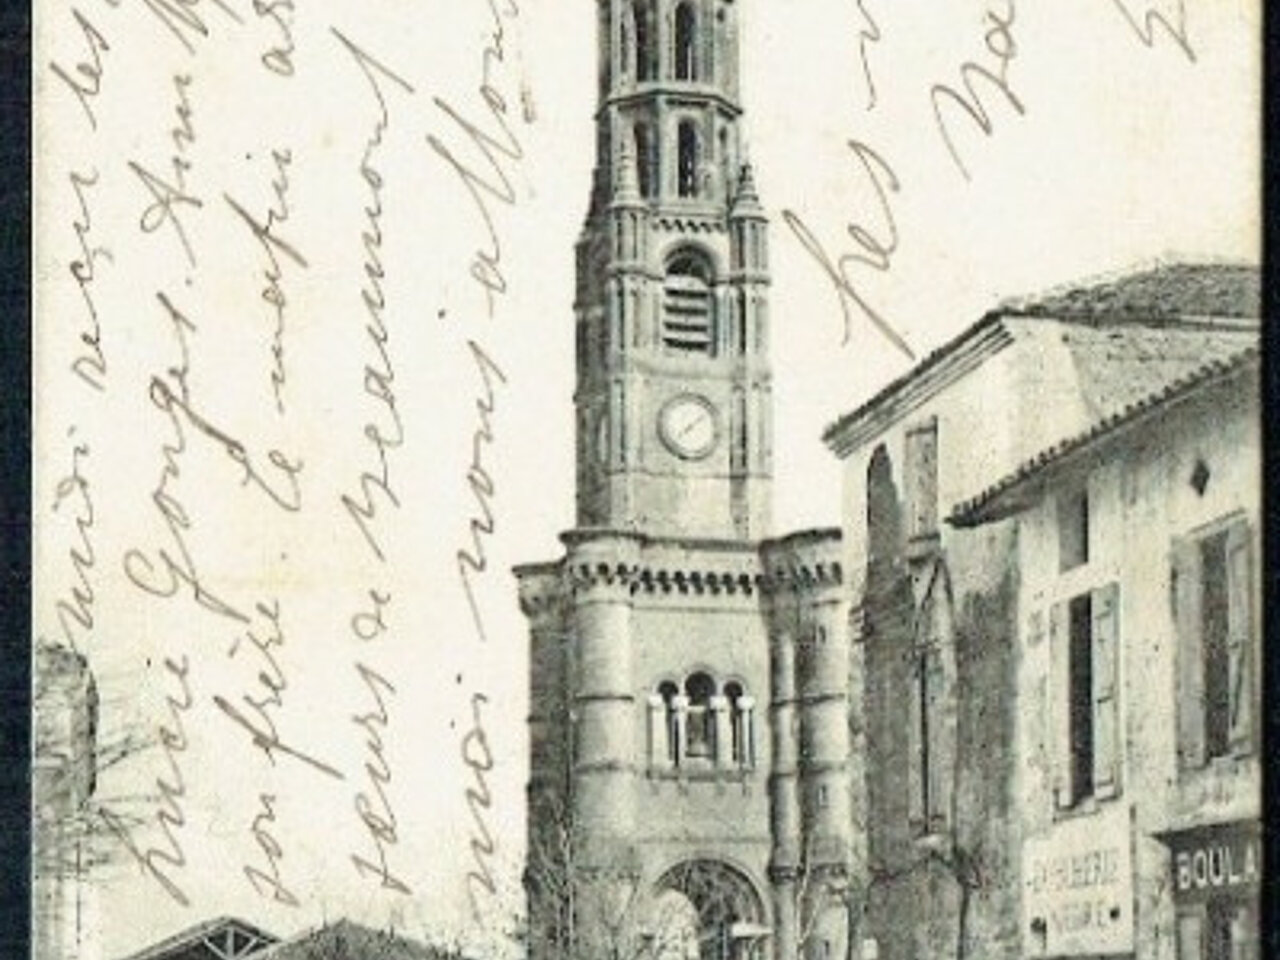 carte postale noir et blanc clochet église de Meauzac